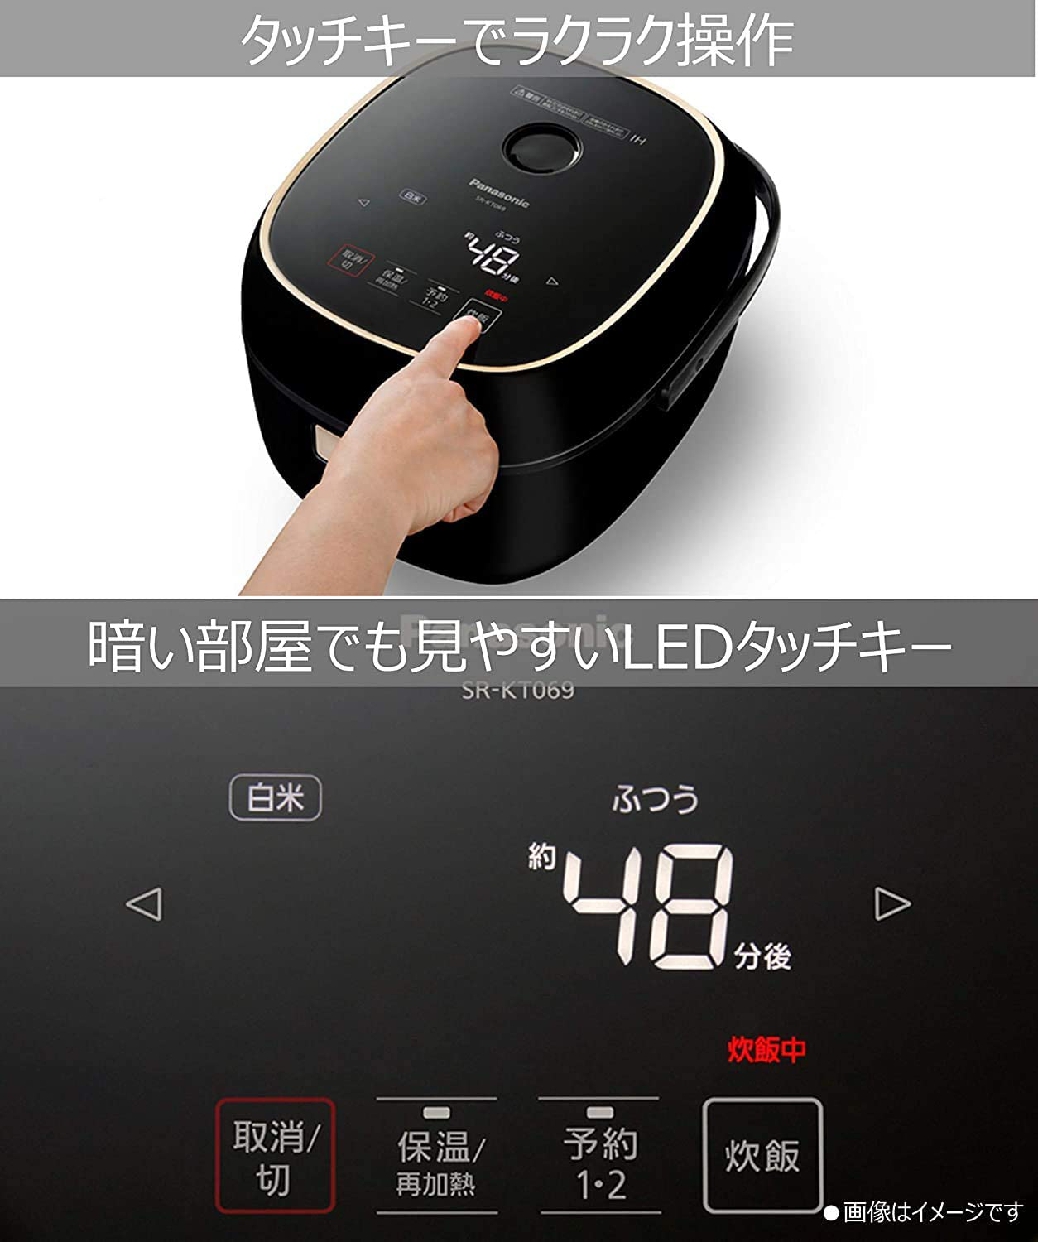 Panasonic(パナソニック) IHジャー炊飯器 SR-KT069の商品画像サムネ5 